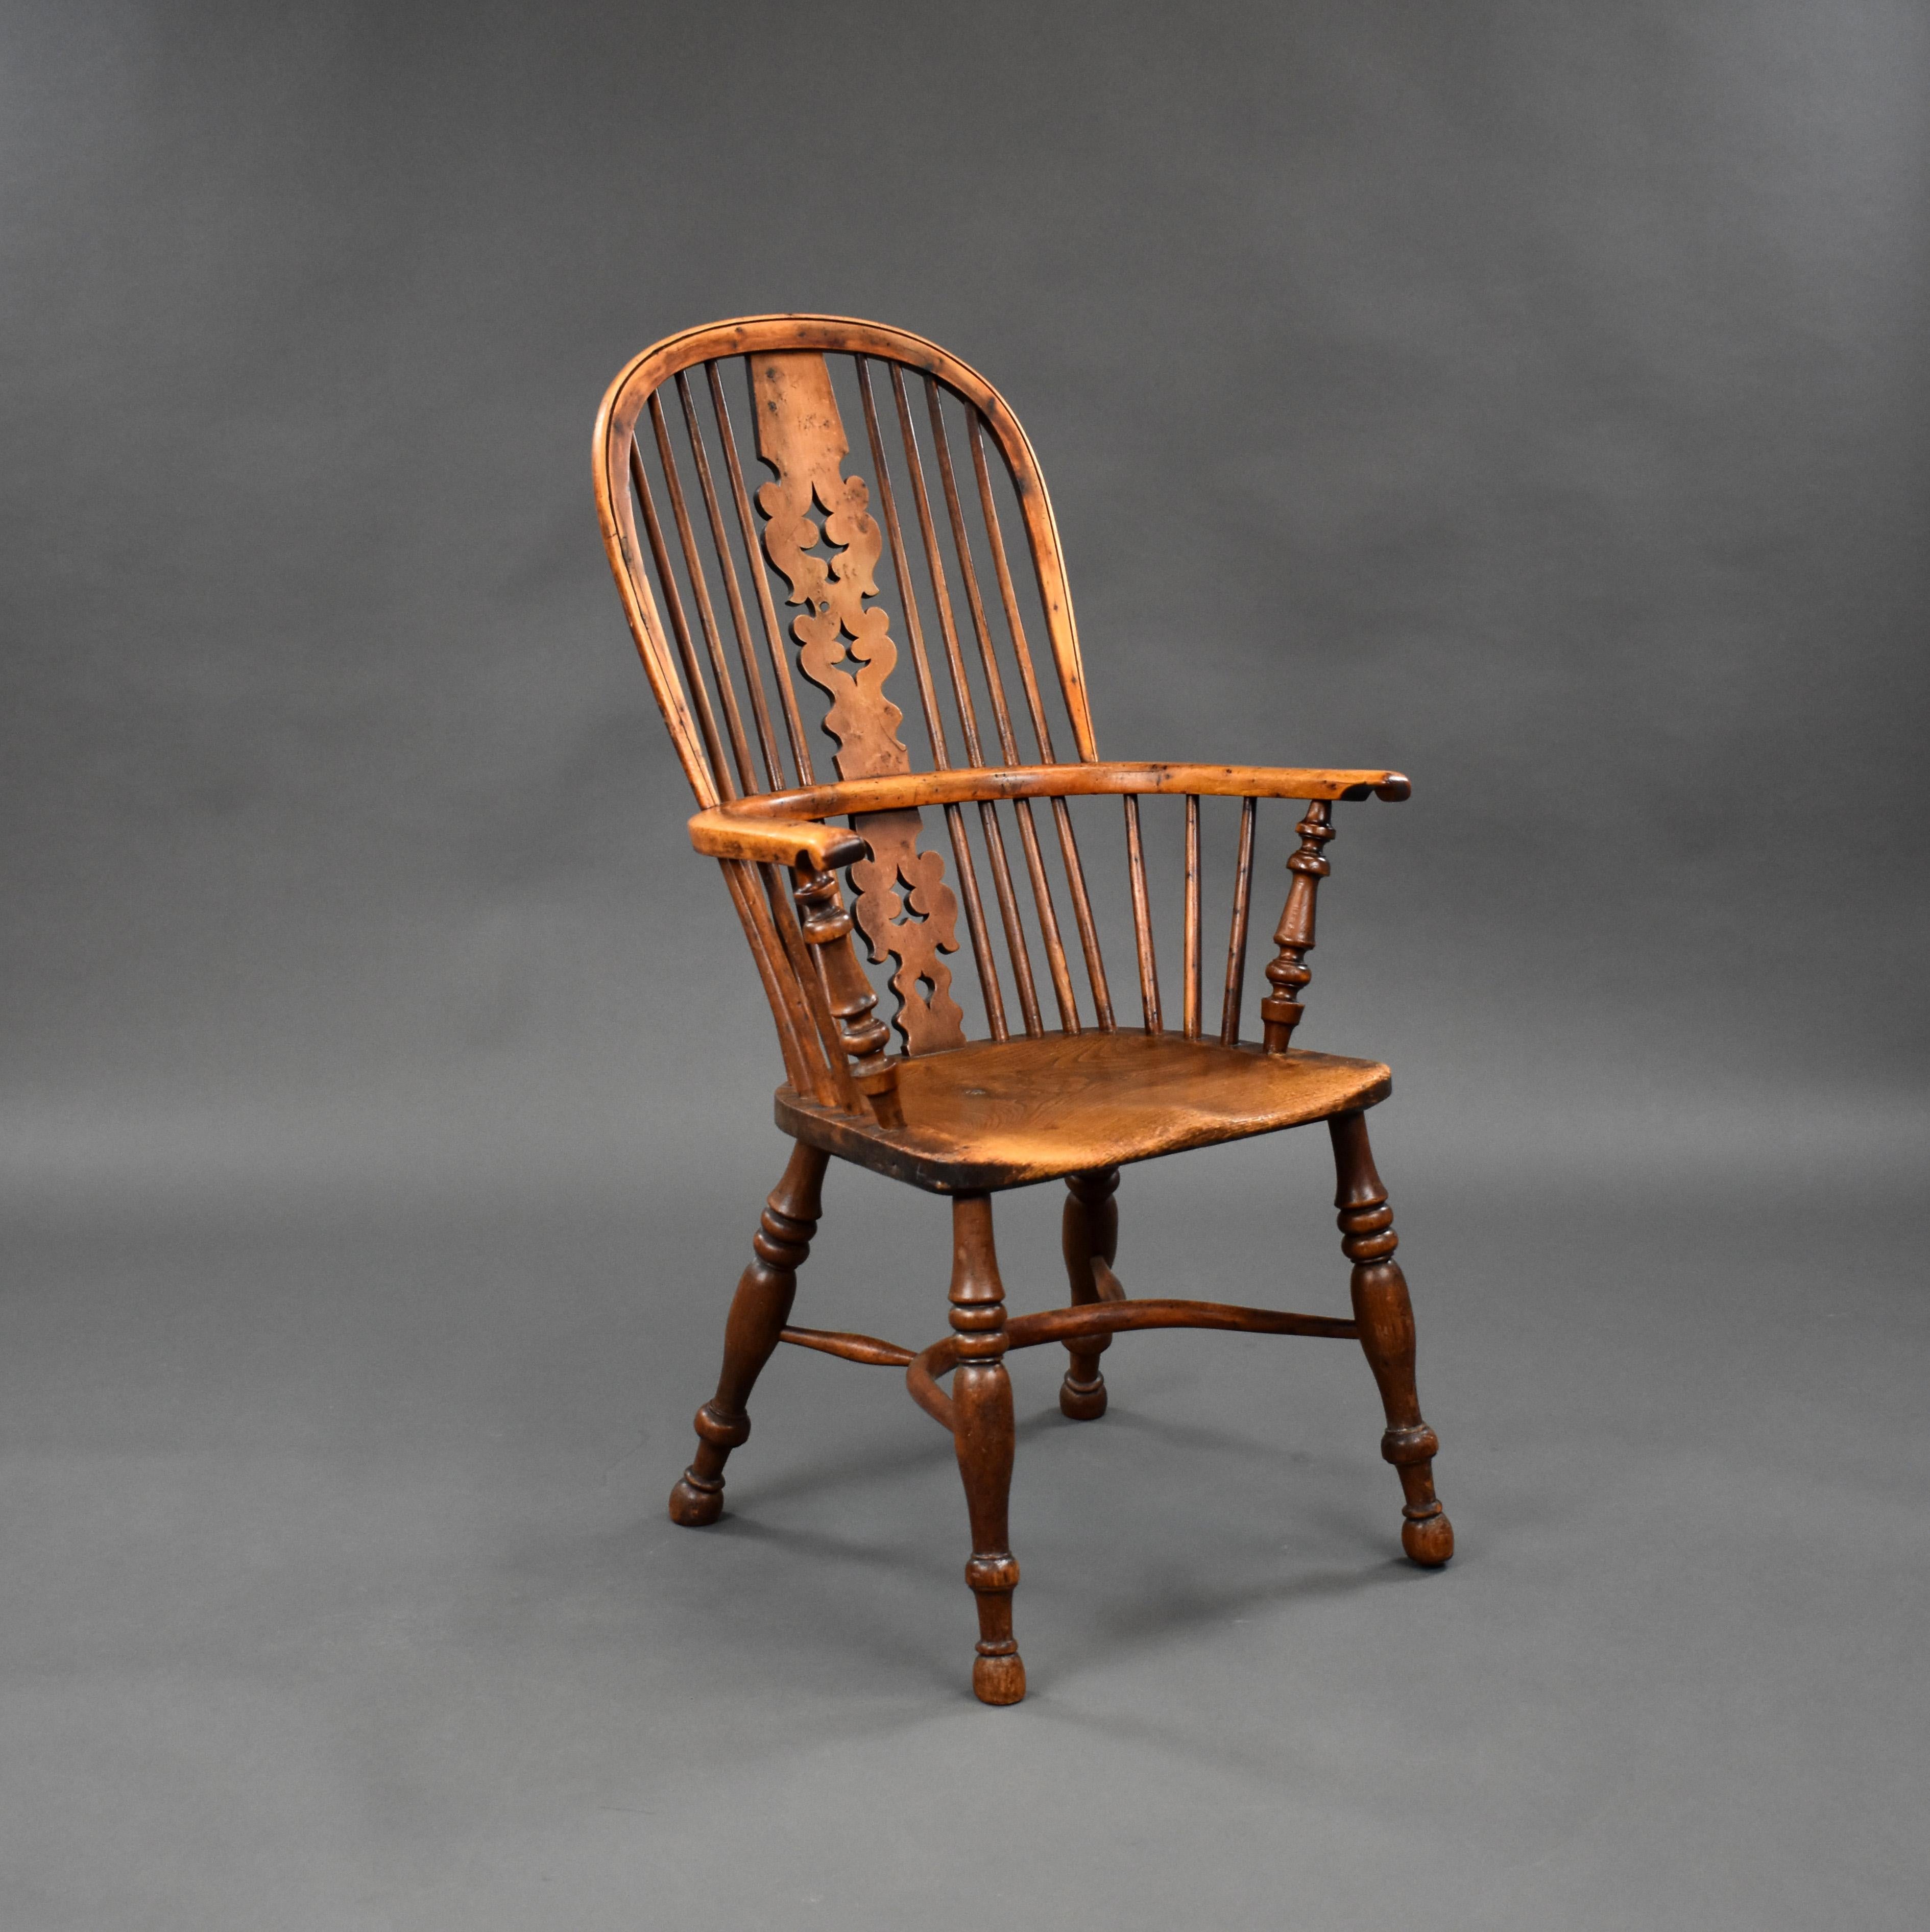 Nous proposons à la vente une chaise Windsor à haut dossier en bois d'if et d'orme de bonne qualité, datant du 19ème siècle, avec un dossier en bois d'if et un siège en orme, reposant sur des pieds tournés unis par une civière. La chaise conserve